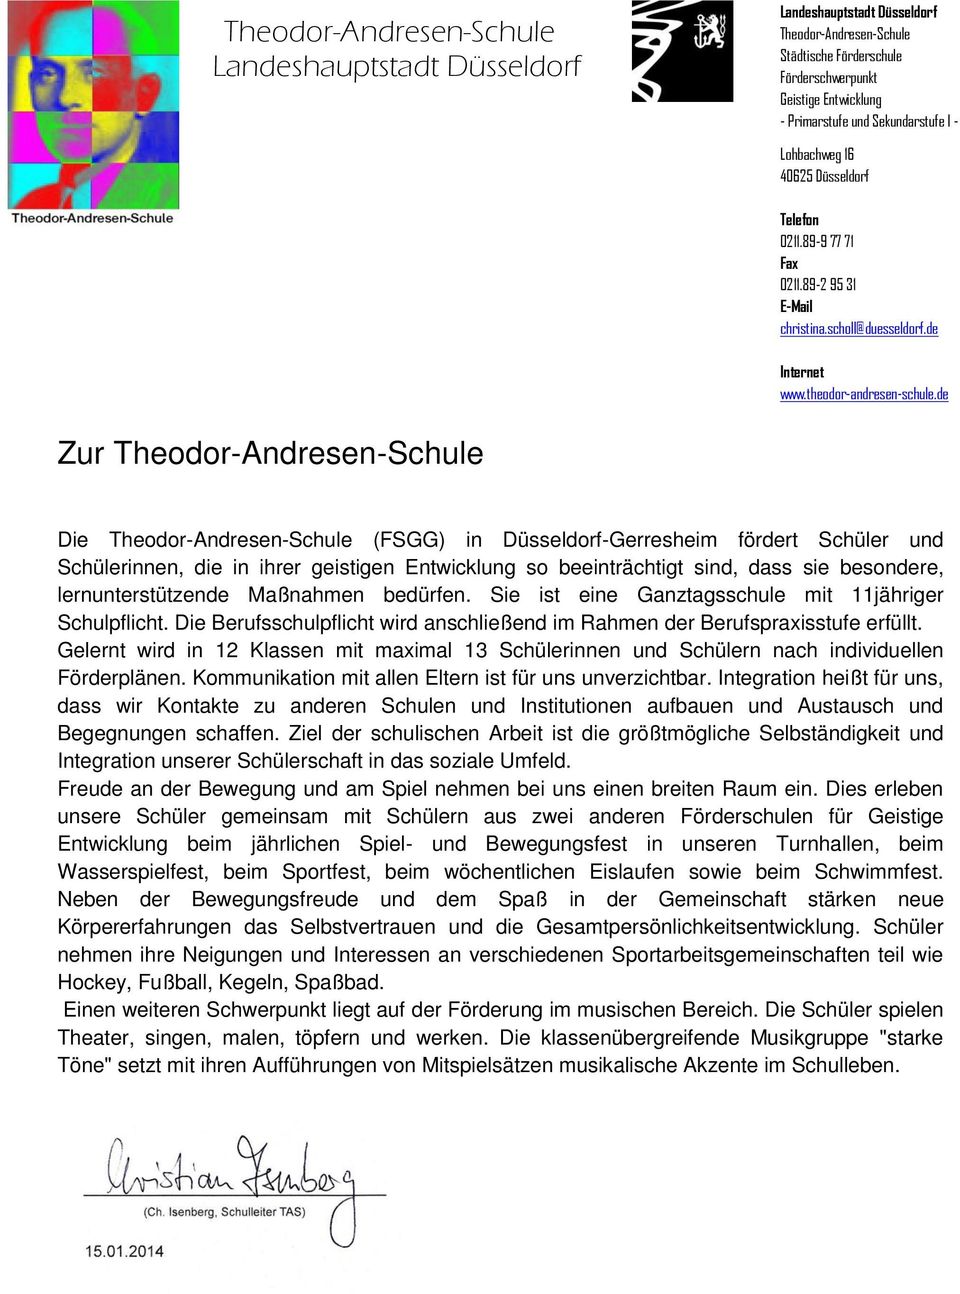 de Zur Theodor-Andresen-Schule Die Theodor-Andresen-Schule (FSGG) in Düsseldorf-Gerresheim fördert Schüler und Schülerinnen, die in ihrer geistigen Entwicklung so beeinträchtigt sind, dass sie